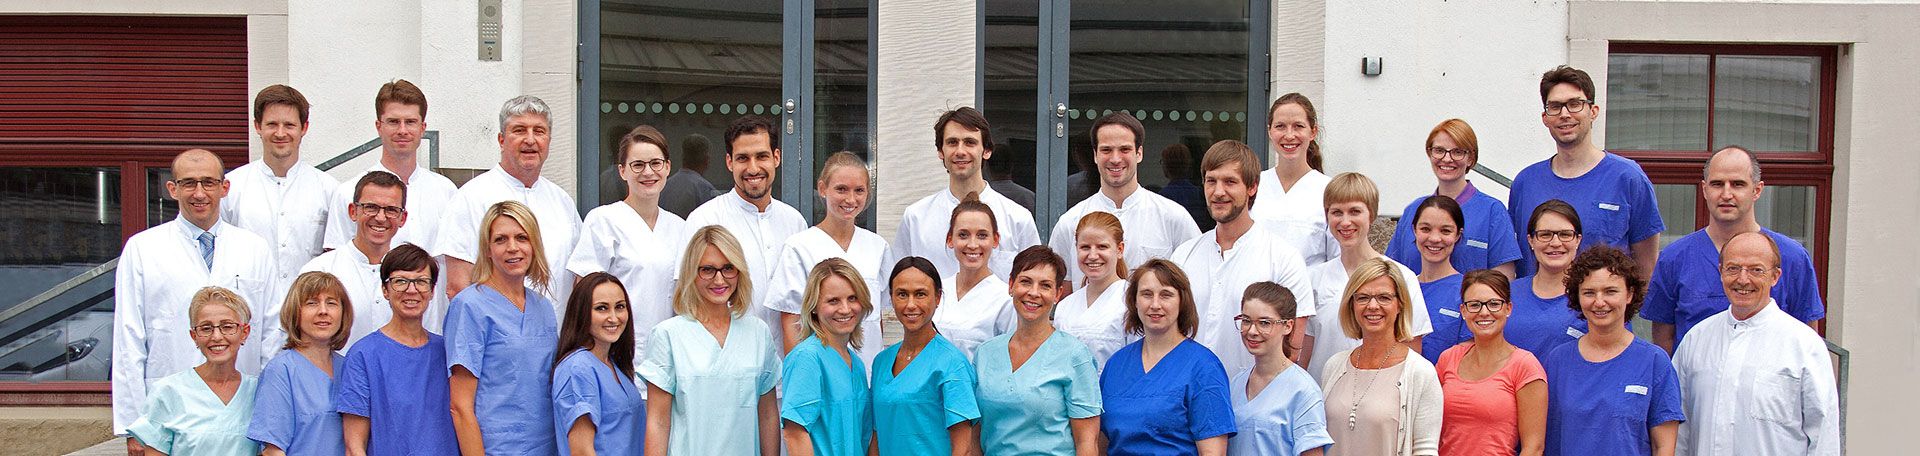 Gruppenfoto: Das Team der Zahnherhaltung und Parodontologie